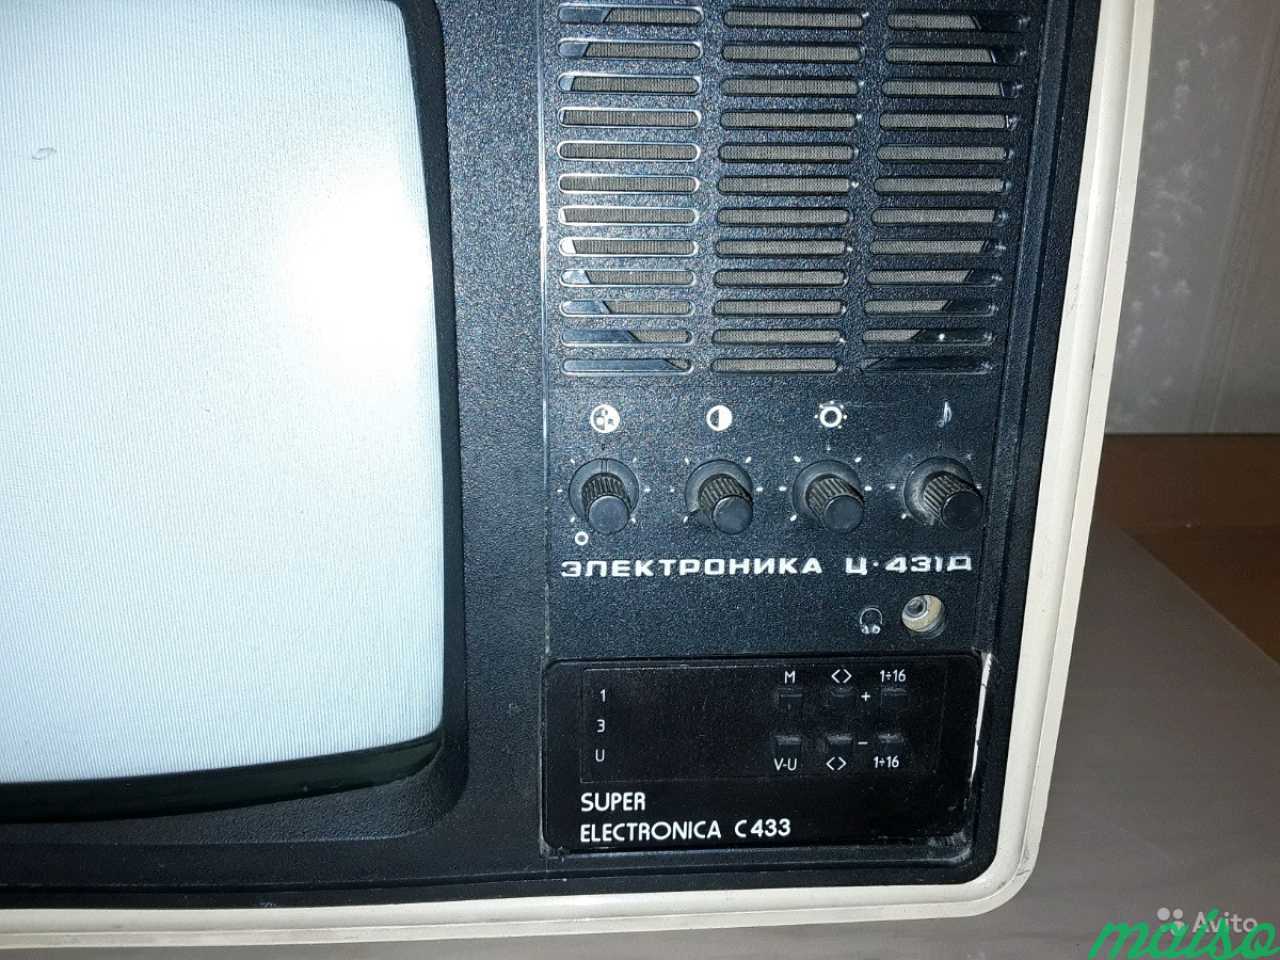 Телевизор цветной переносной Электроника Ц-431 Д 1 в Санкт-Петербурге. Фото 2